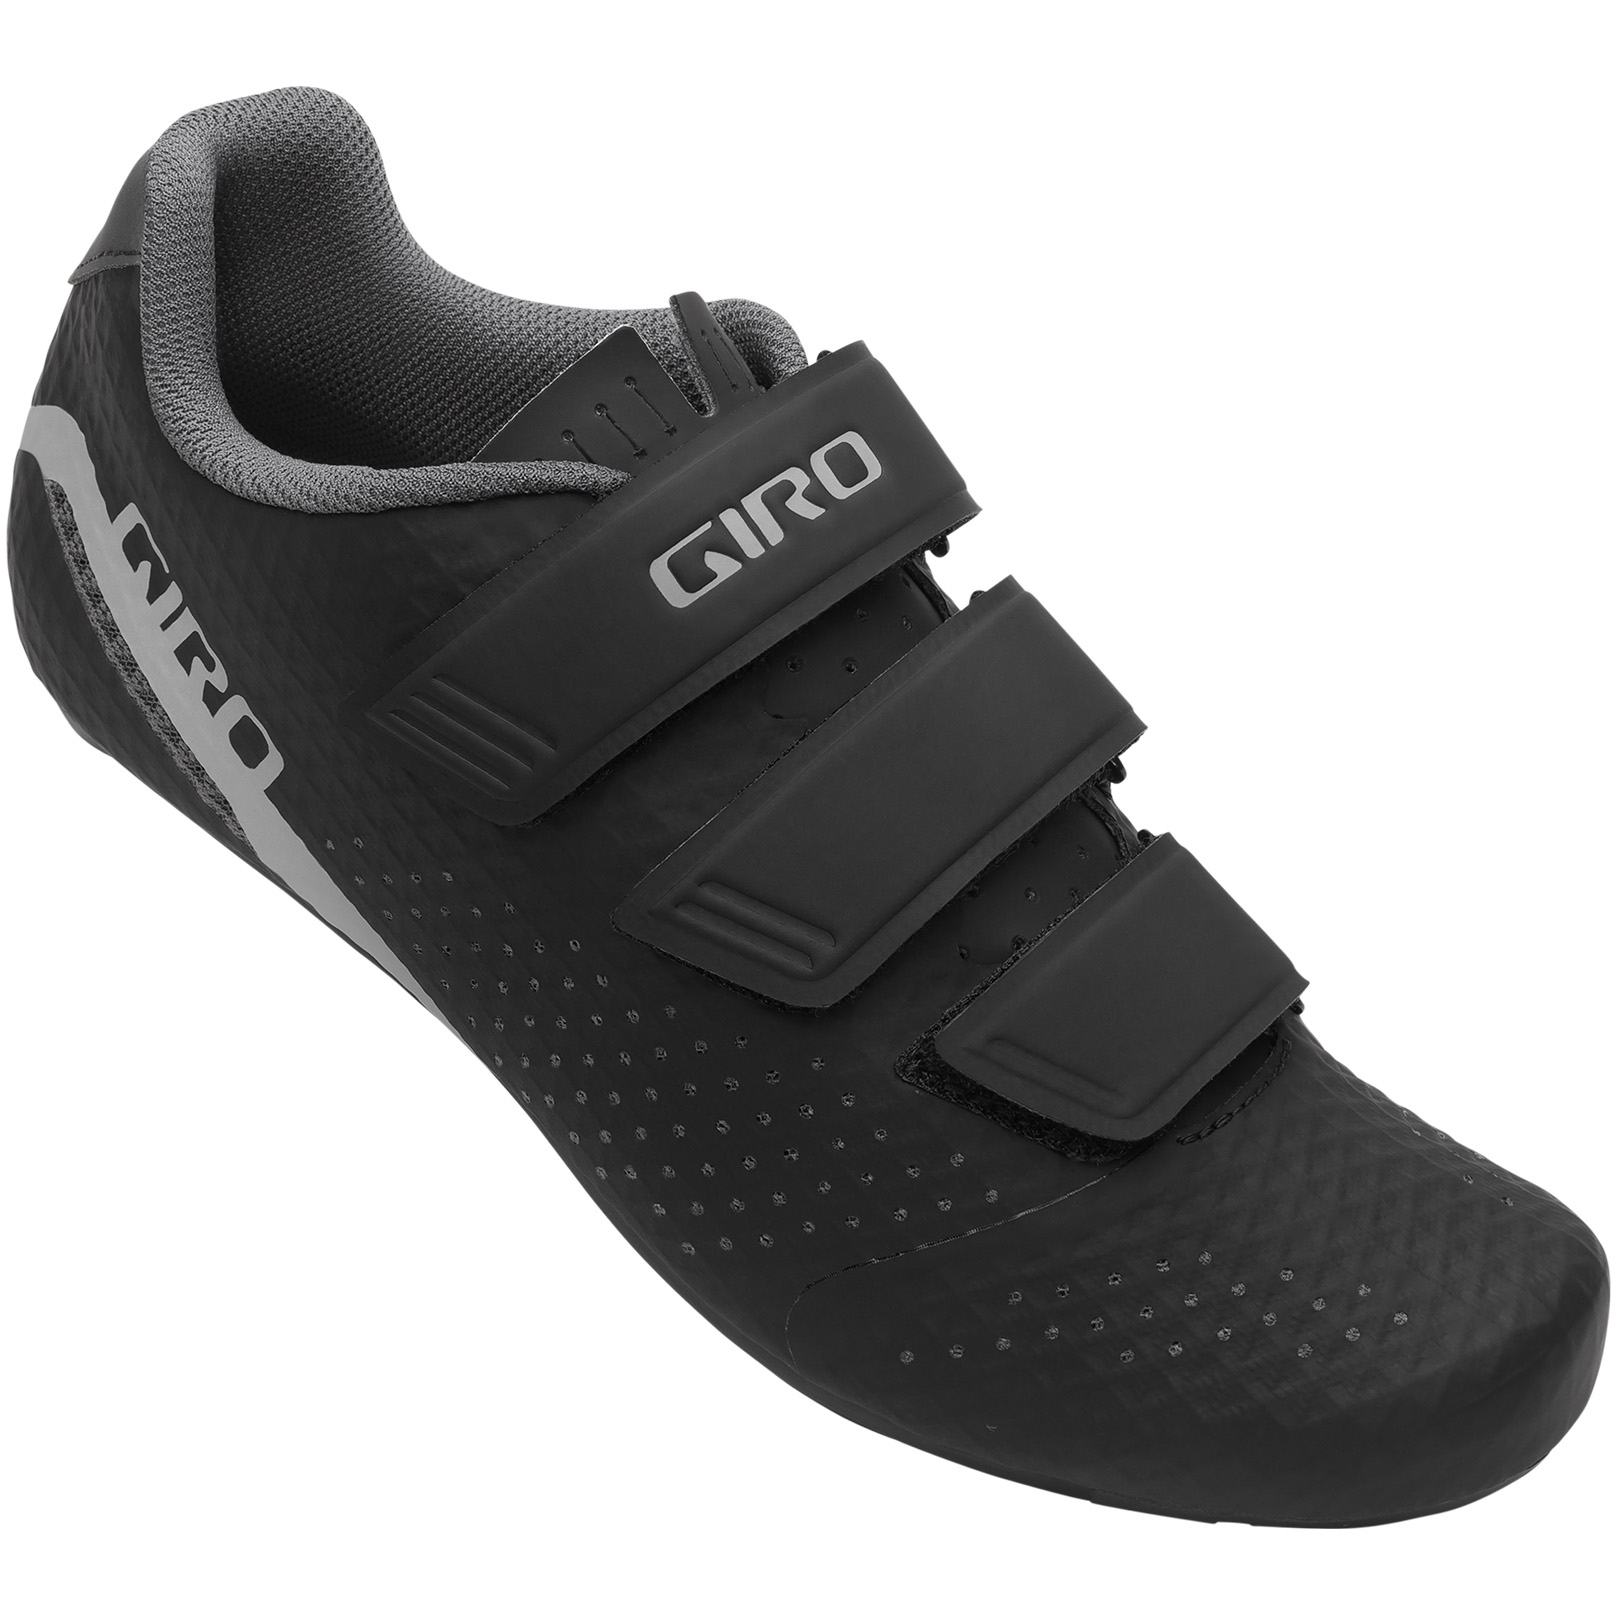 Produktbild von Giro Stylus Rennradschuhe Damen - schwarz